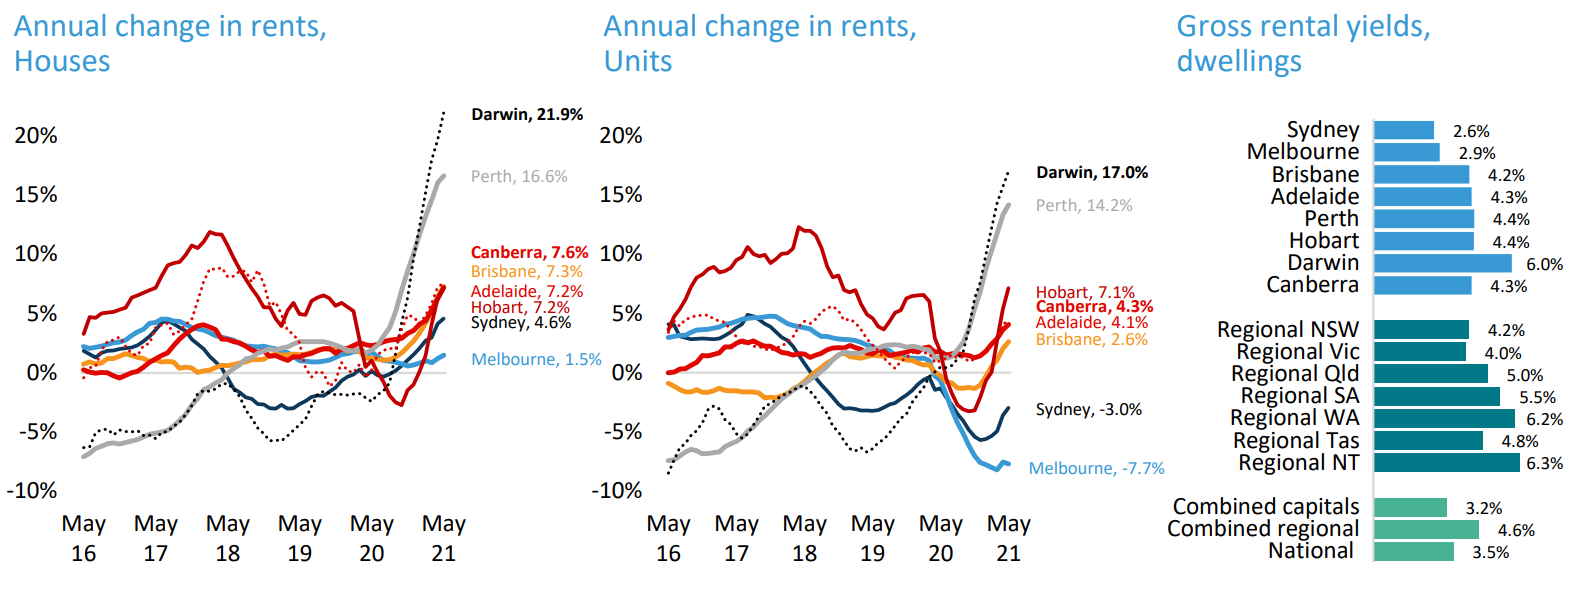 Australian rental yields